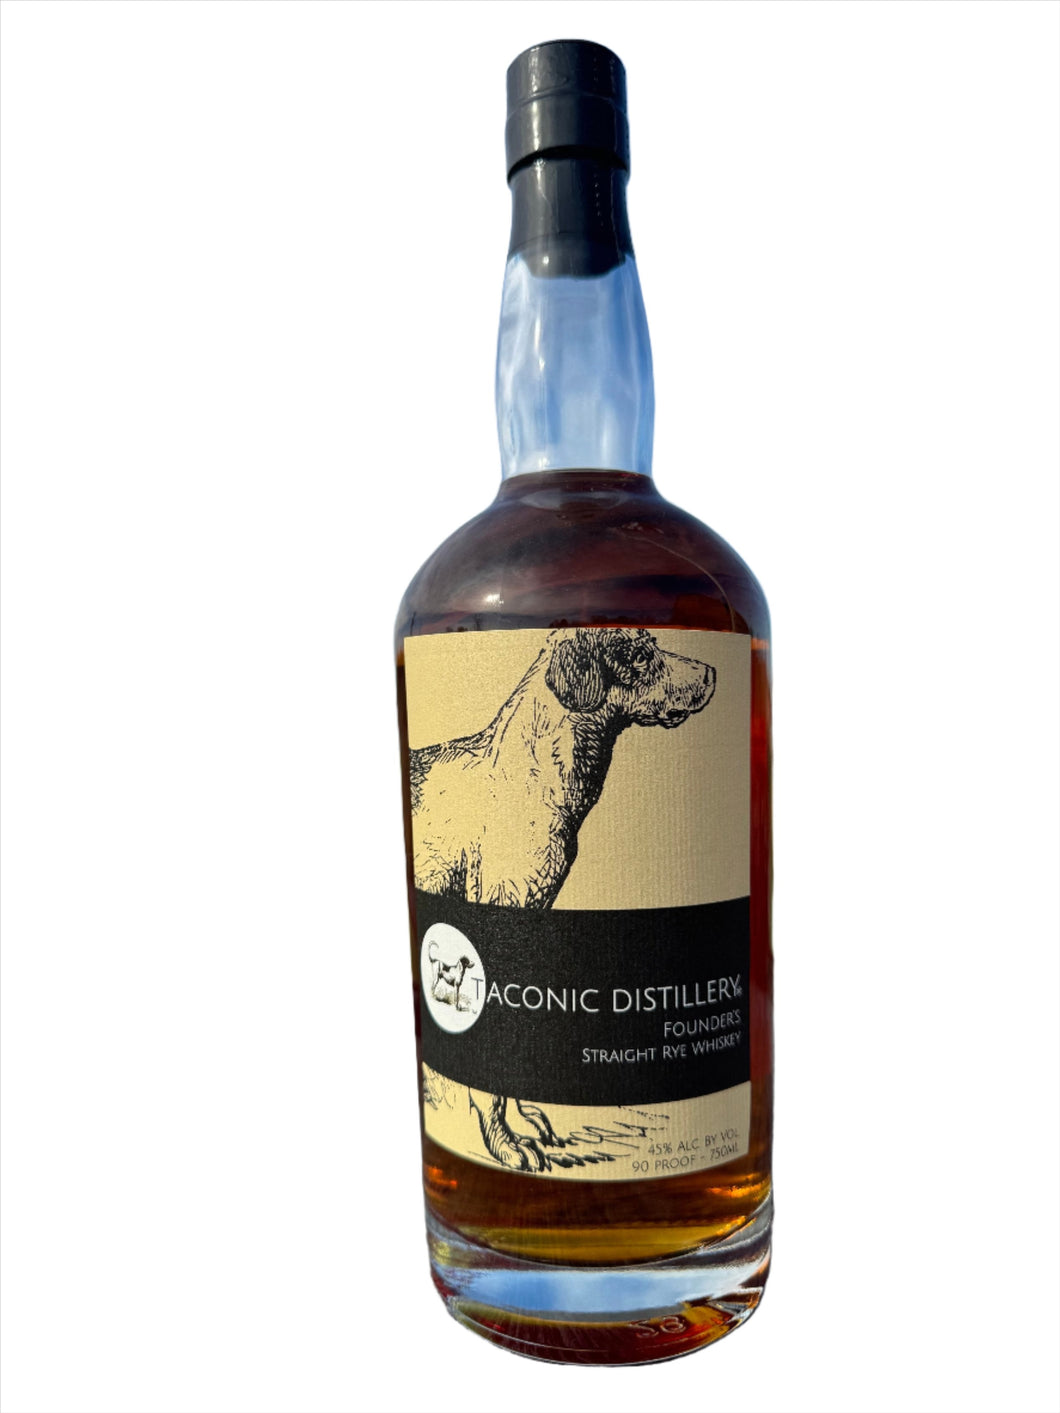 Taconic Distillery Founder's Rye Whiskey